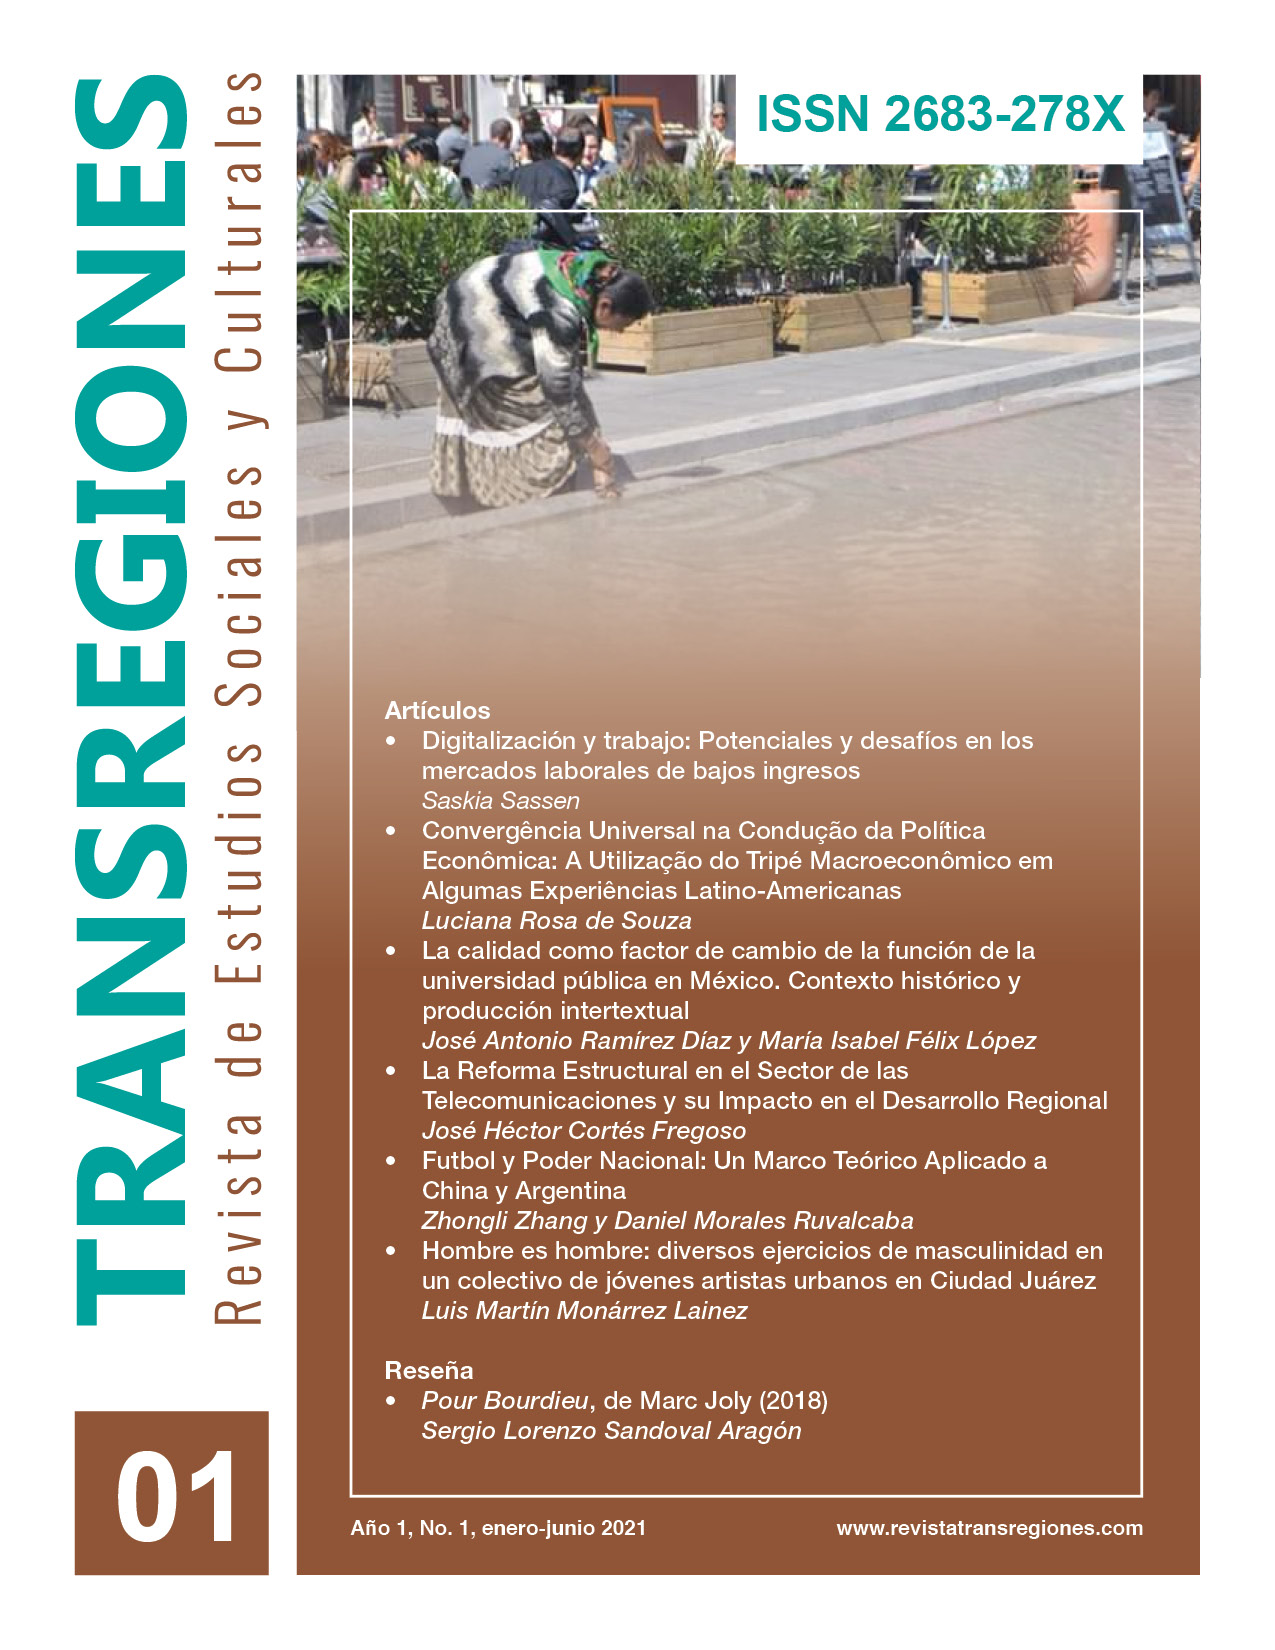 TRANSREGIONES - Revista de Estudios Sociales y Culturales -  Año 1, No 1 - Enero-Junio 2021